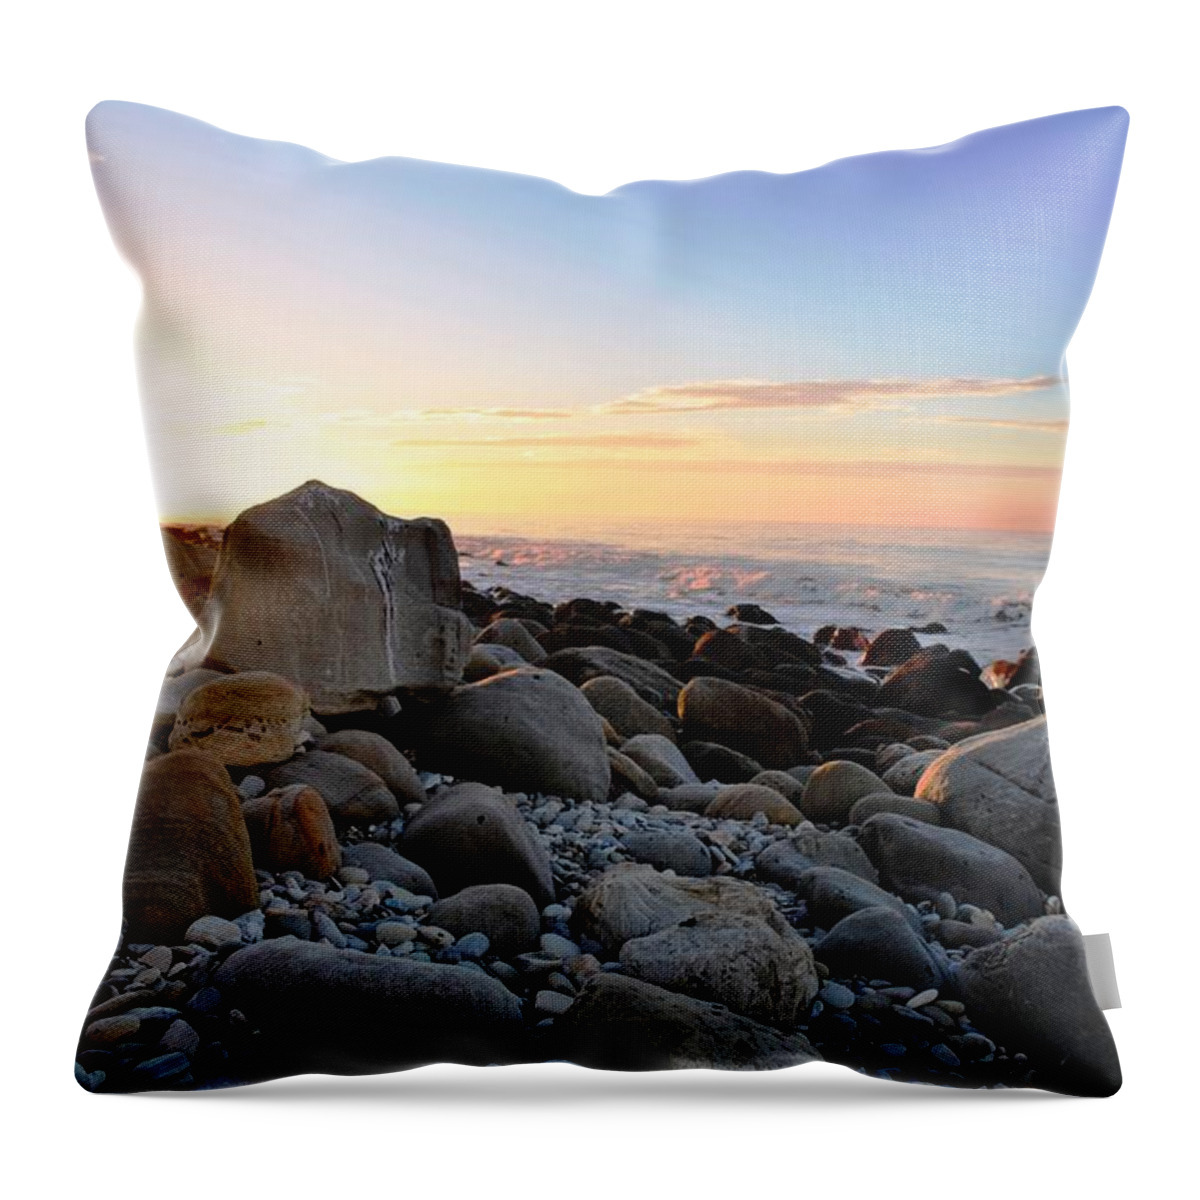 Beach Throw Pillow featuring the photograph Beach Sunrise over Rocks by Matt Quest